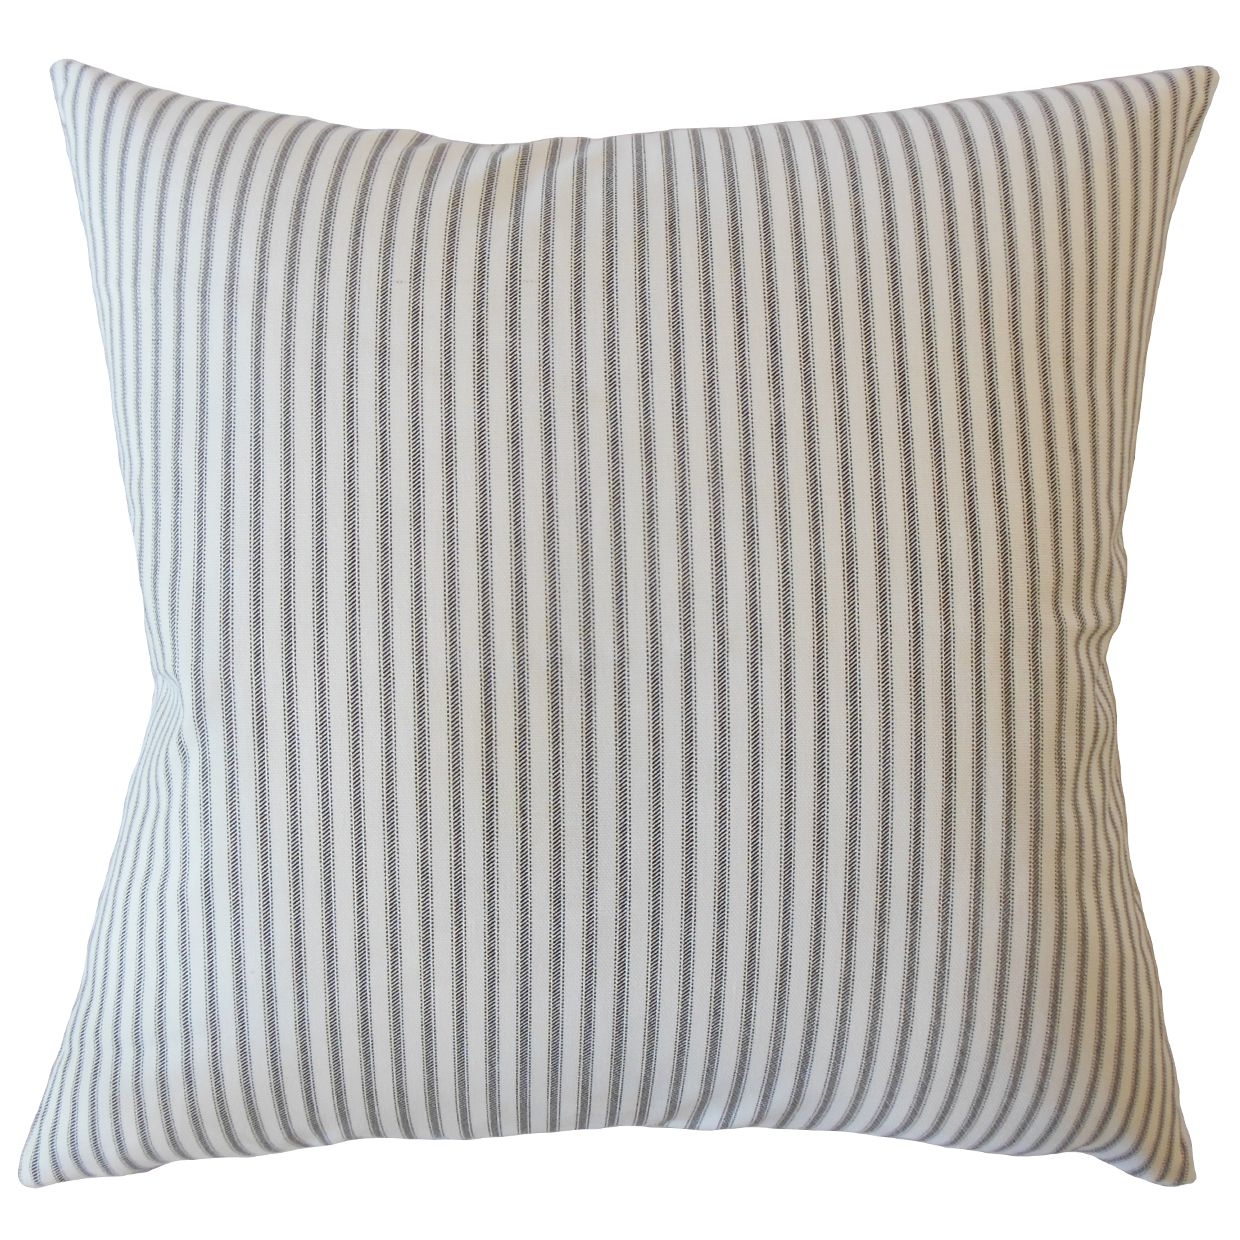 20" x 20" Ticking Stripe Pillow, - Image 0